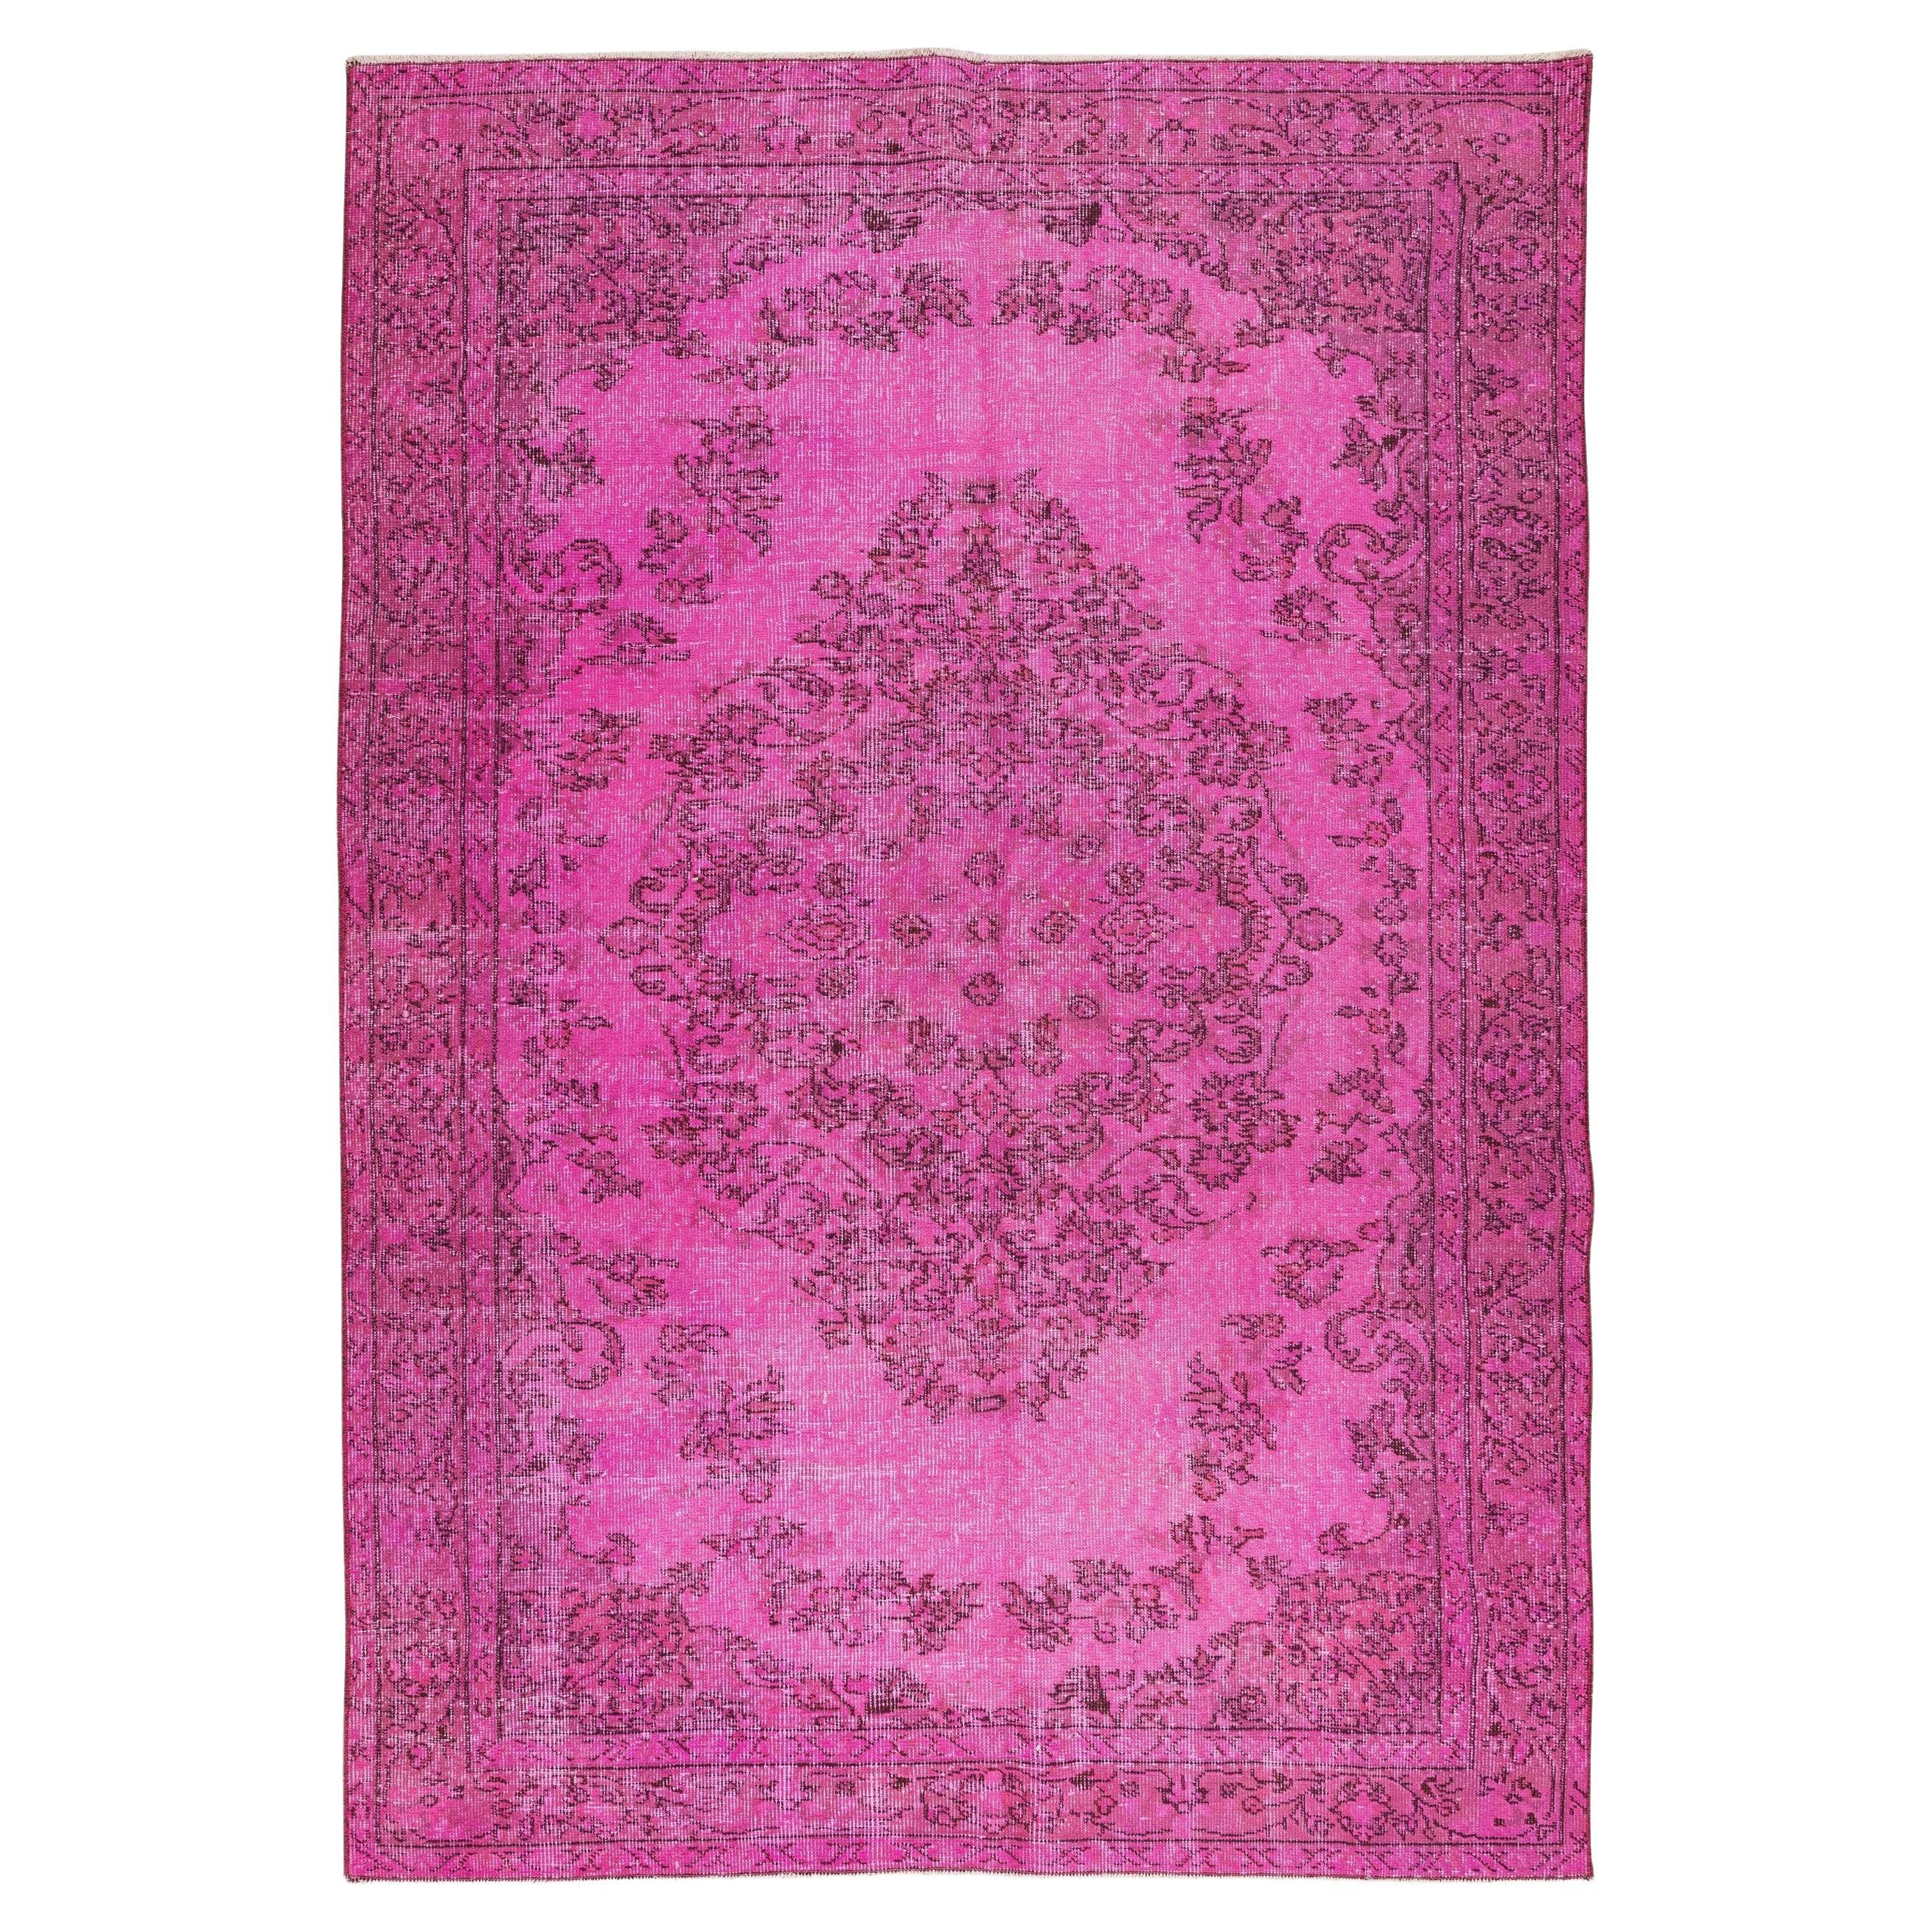 5.6x8.3 Ft Vintage Handgefertigter türkischer Teppich in Rosa mit Medaillon-Design